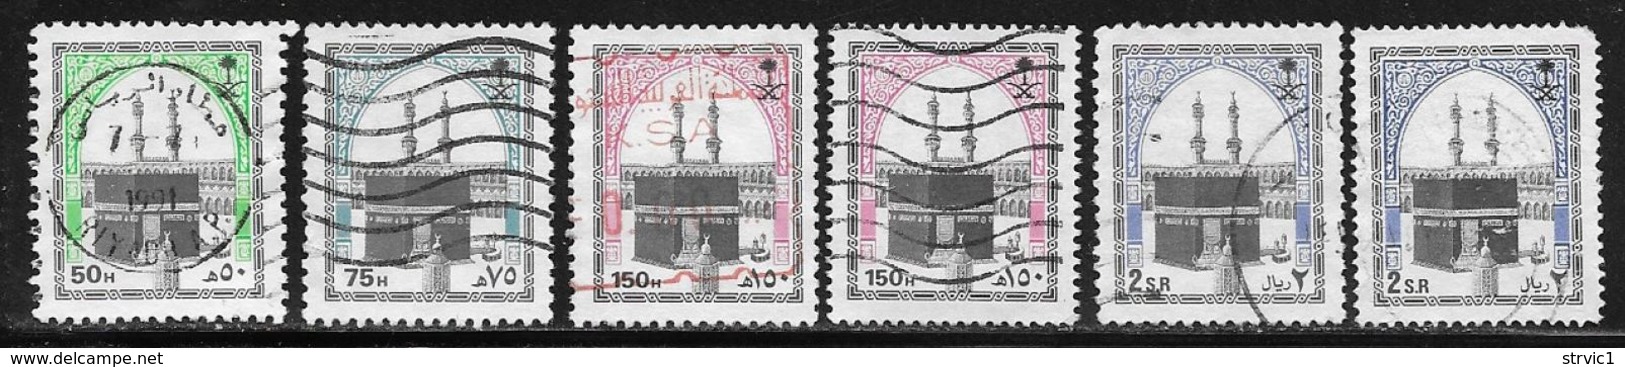 Saudi Arabia Scott # 986,987,989,989a,990,990a Used Holy Kaaba, 1990-9 - Saudi Arabia